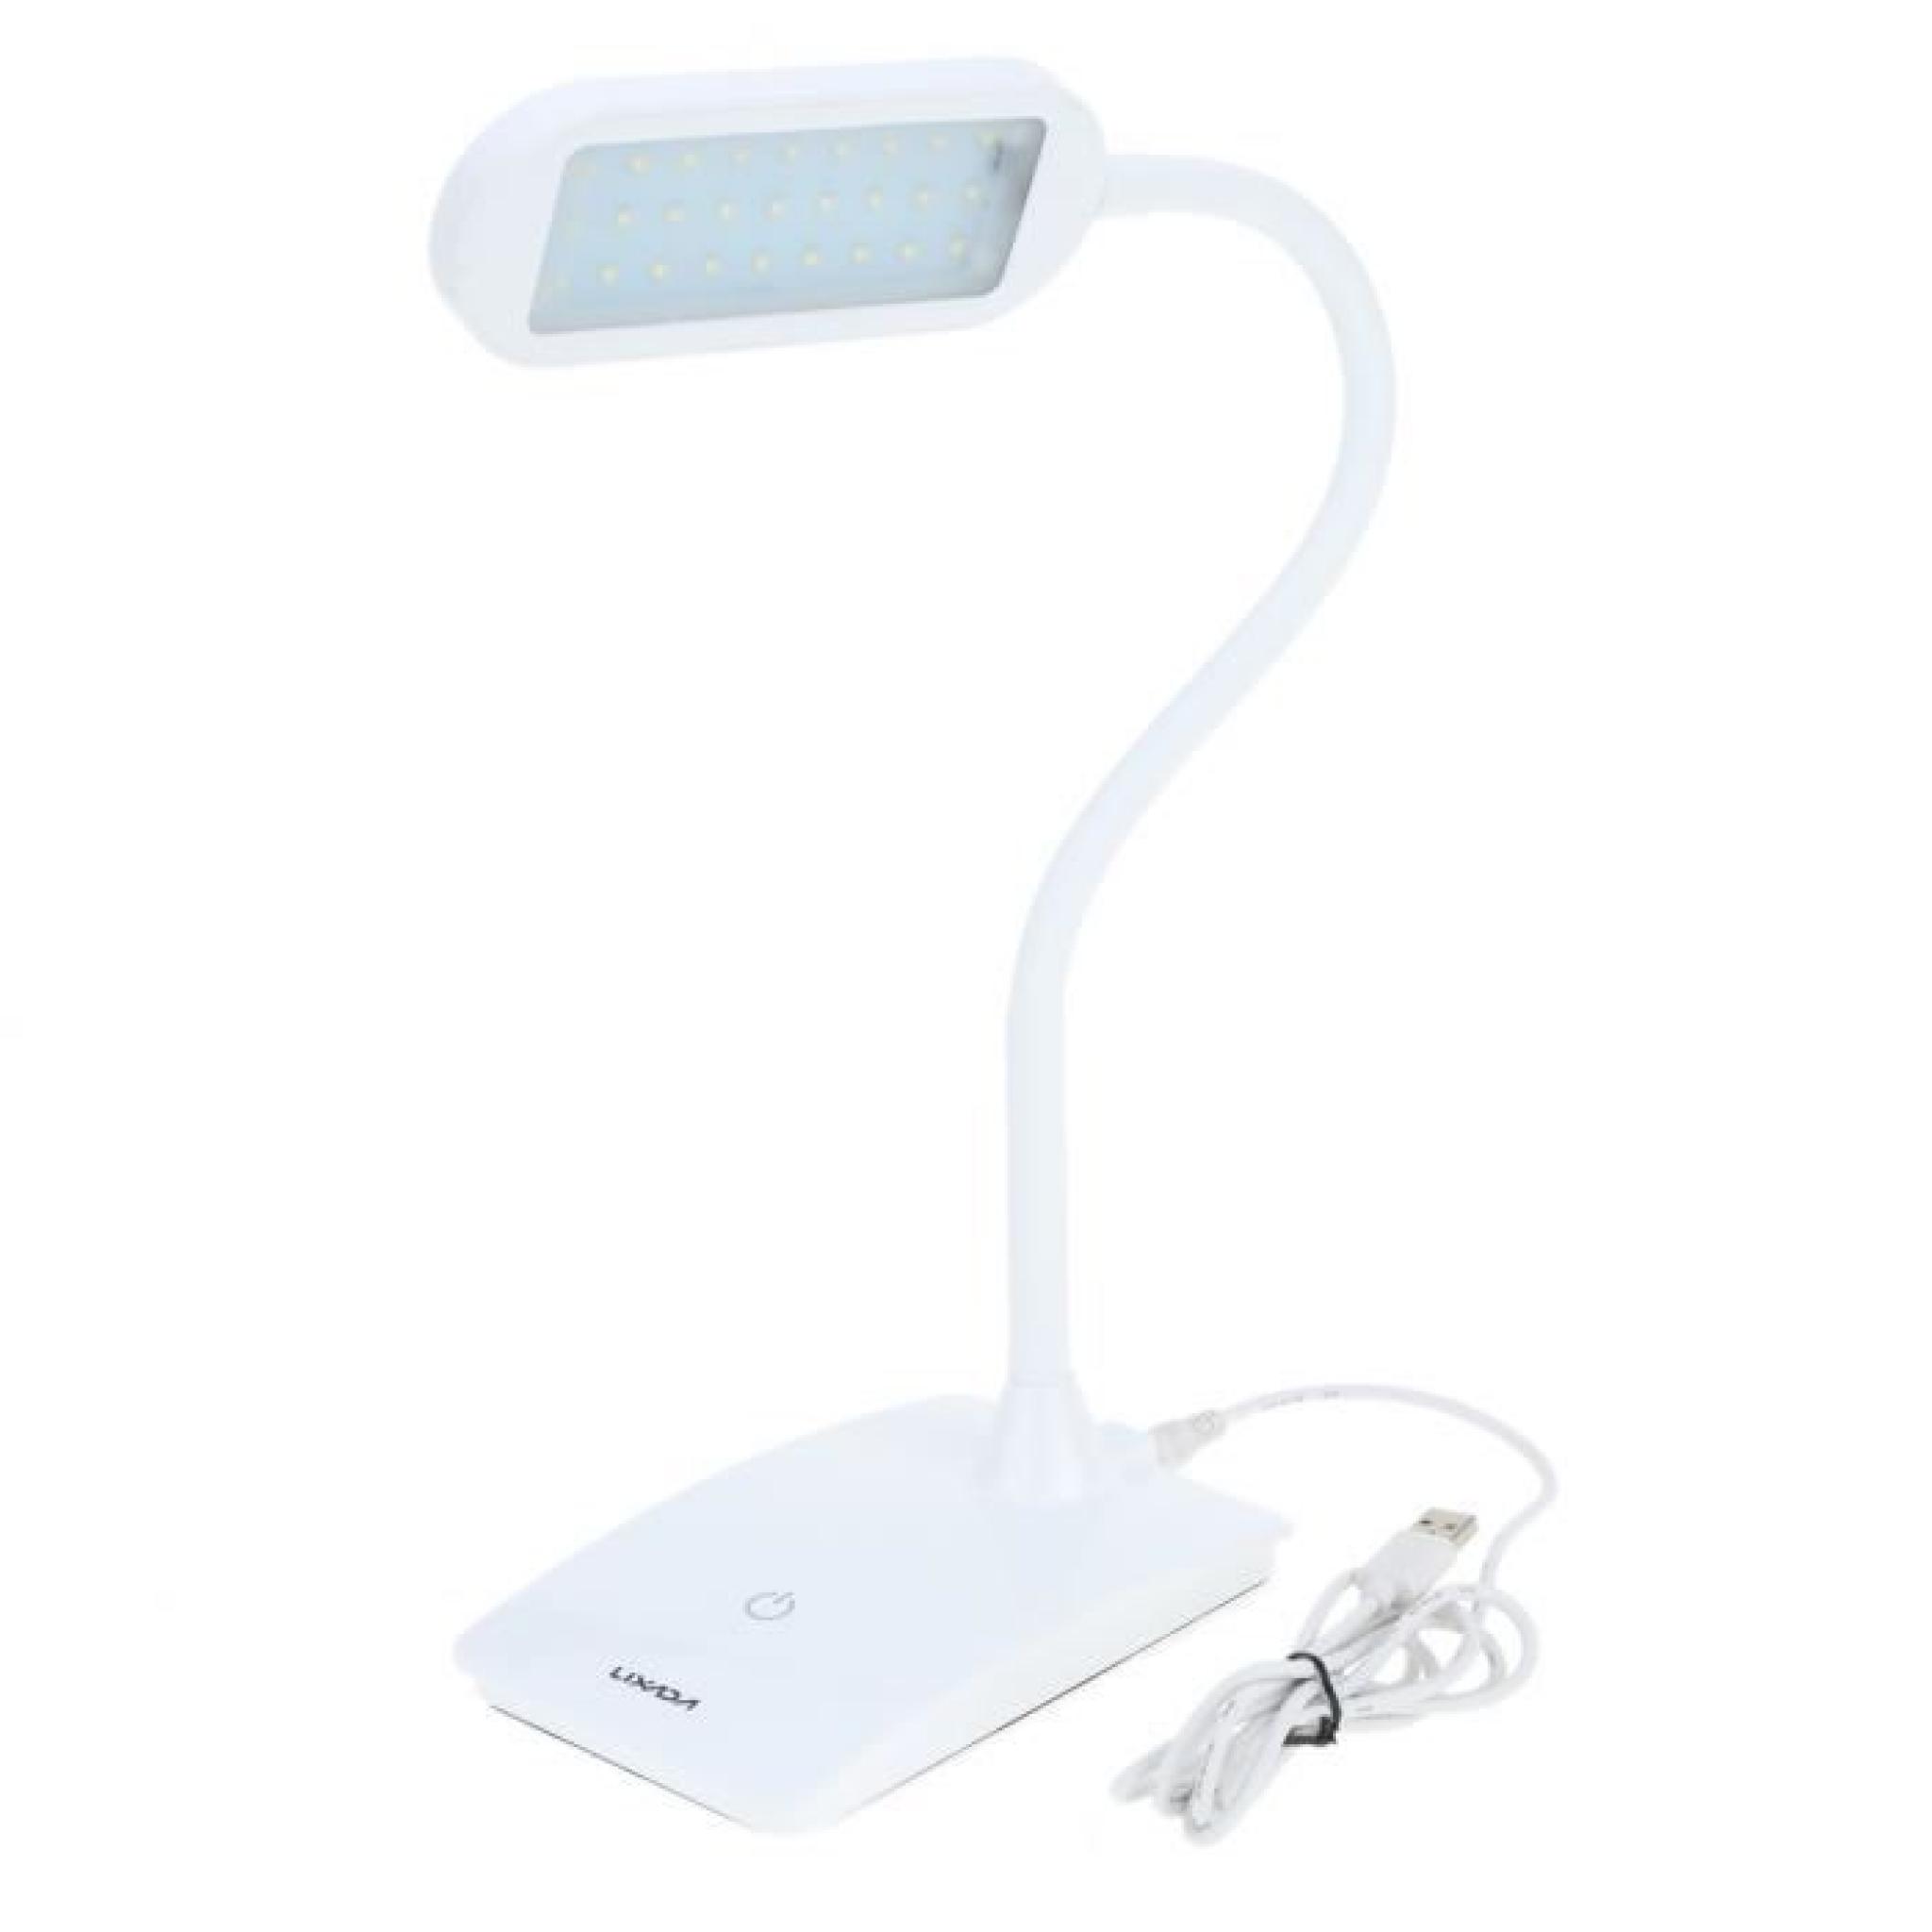  Lixada 6W rechargeable Commutateur tactile Lampe LED de lecture Protéger l'oeil luminosité réglable lampe de table pliable blanc pas cher